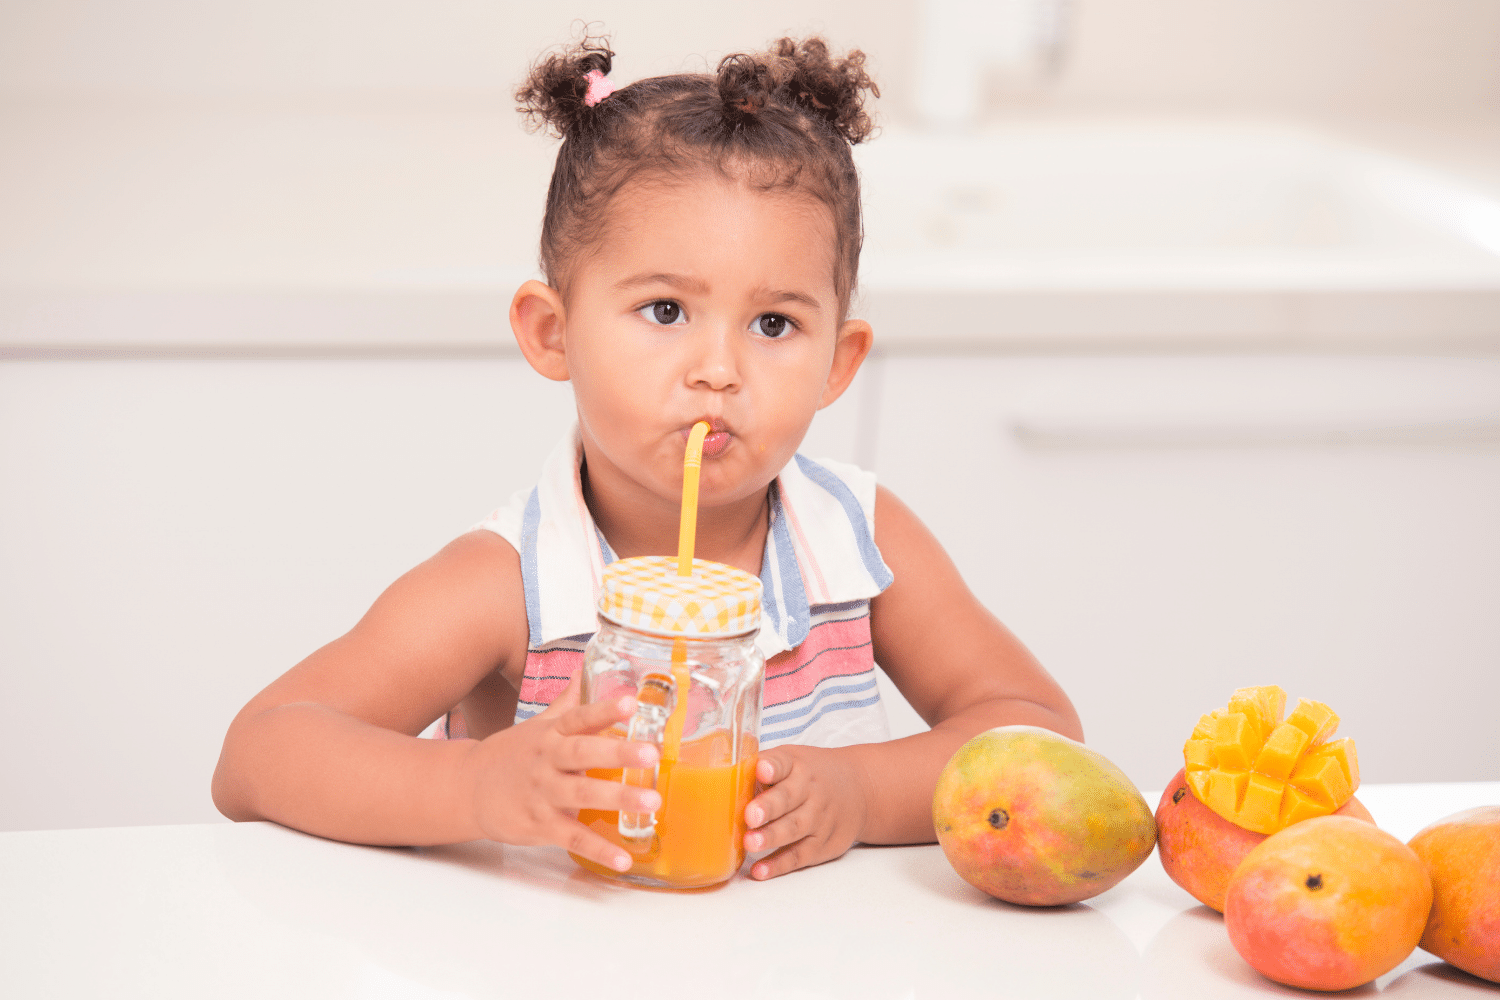 Plant-Based Kids Nutrition